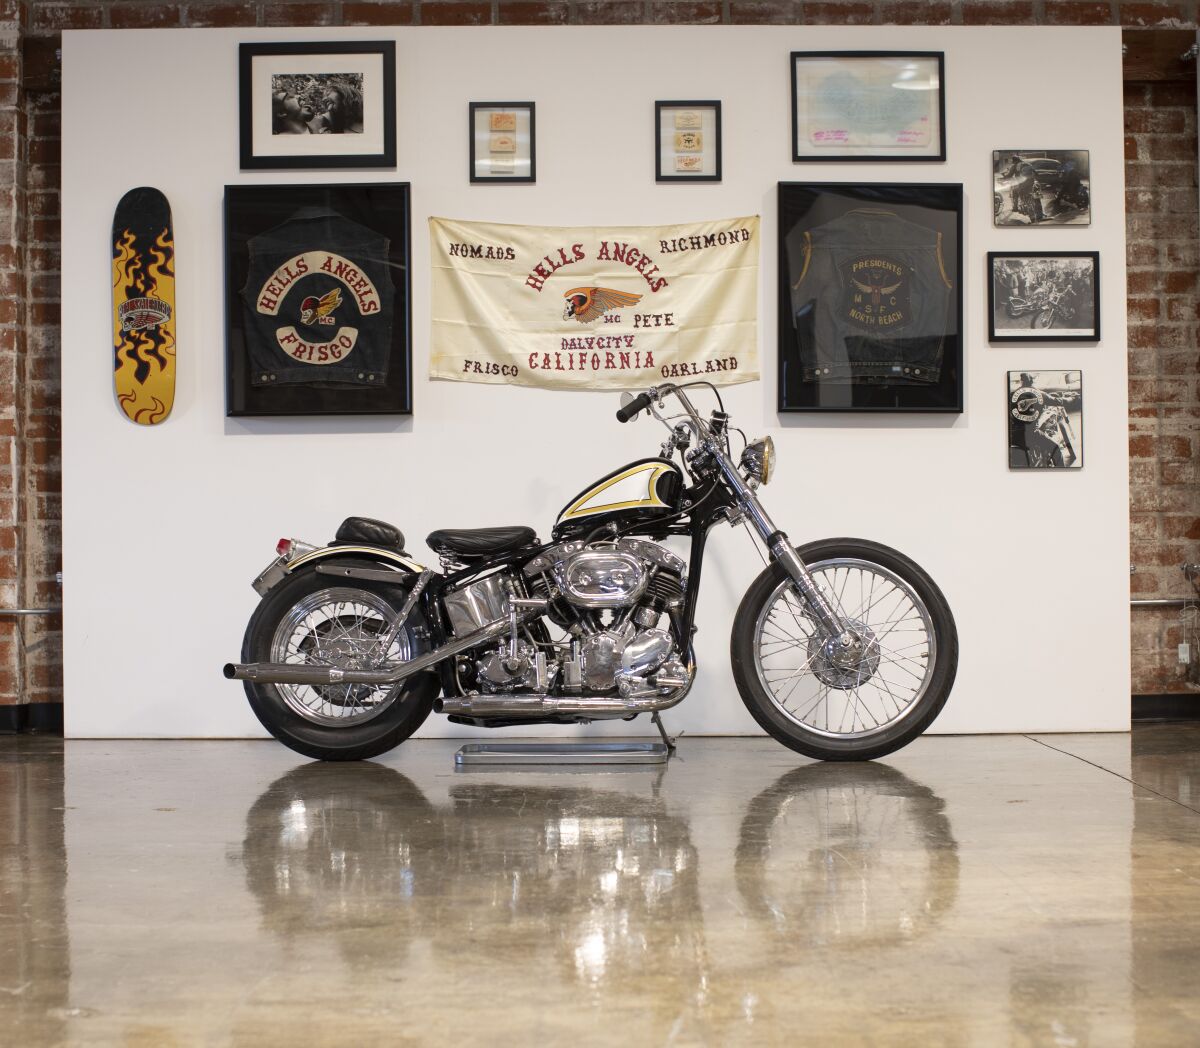   A motorcycle amid memorabilia 